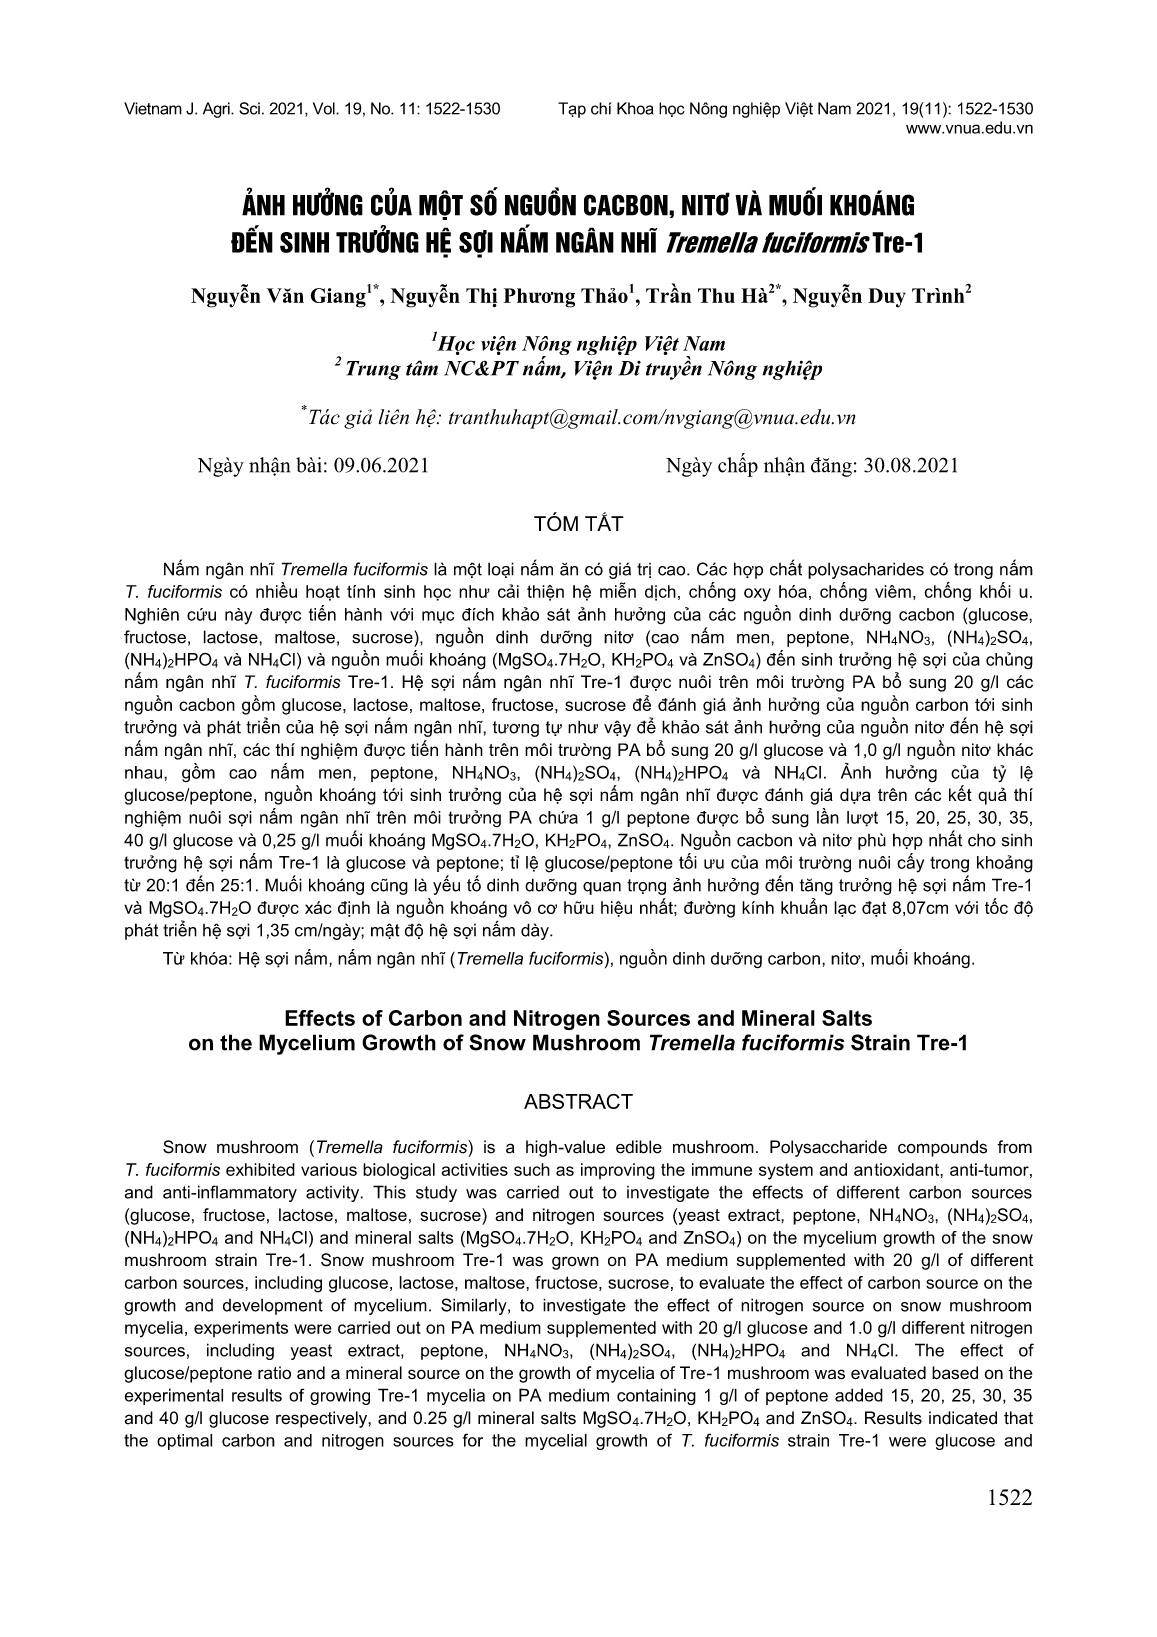 Ảnh hưởng của một số nguồn cacbon, nitơ và muối khoáng đến sinh trưởng hệ sợi nấm ngân nhĩ Tremella Fuciformis Tre-1 trang 1